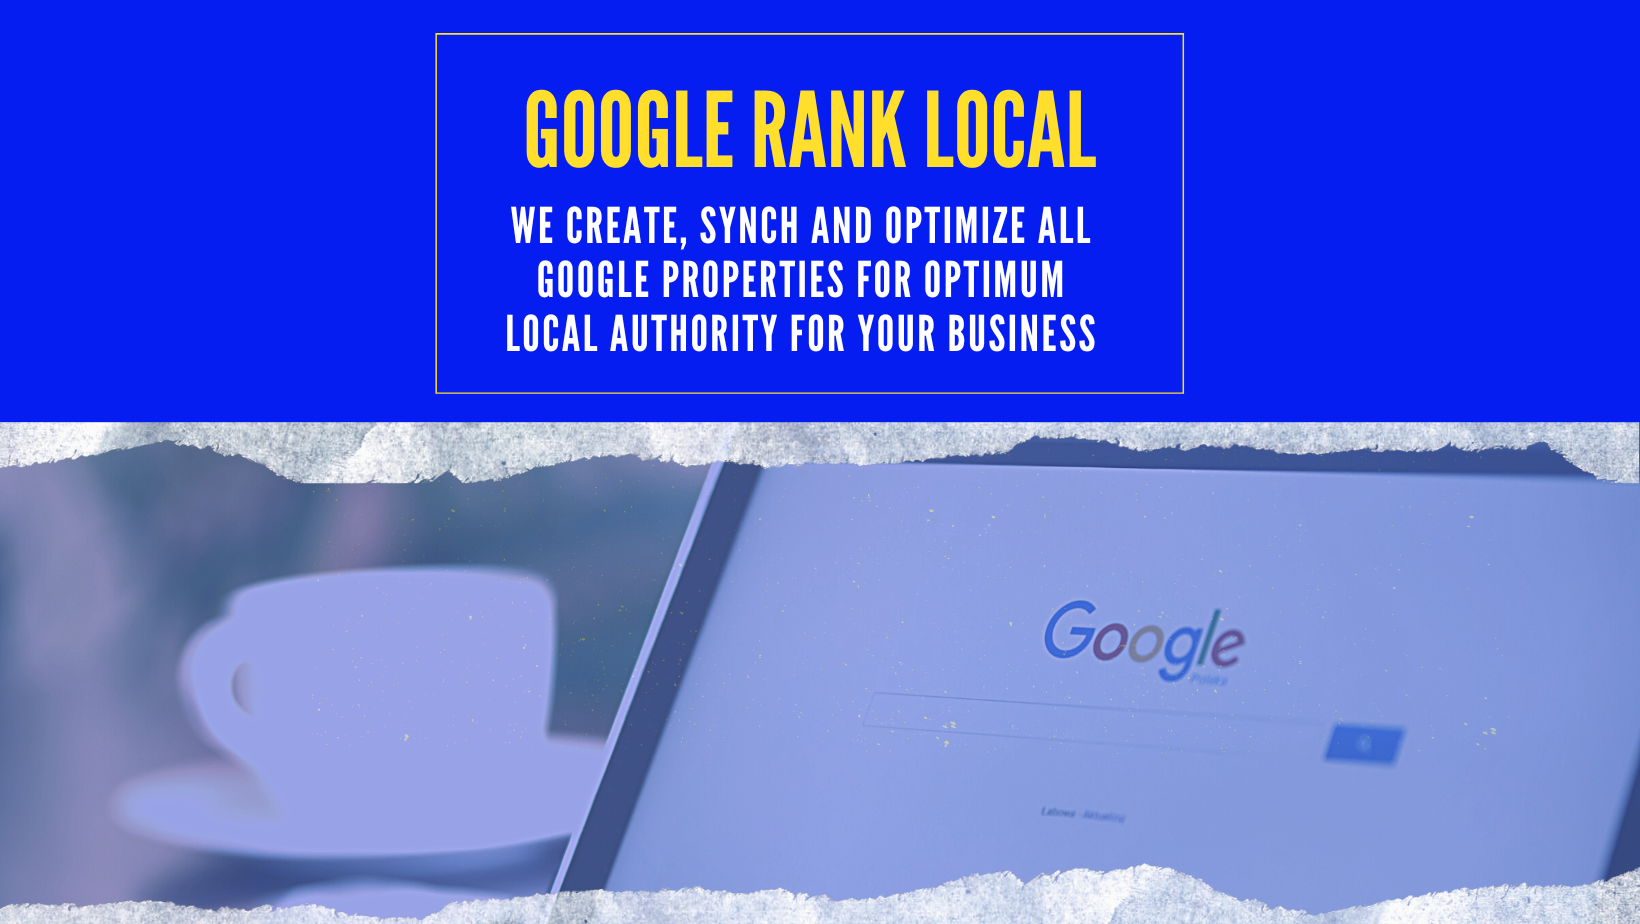 Google Rank Local Long Island, NY